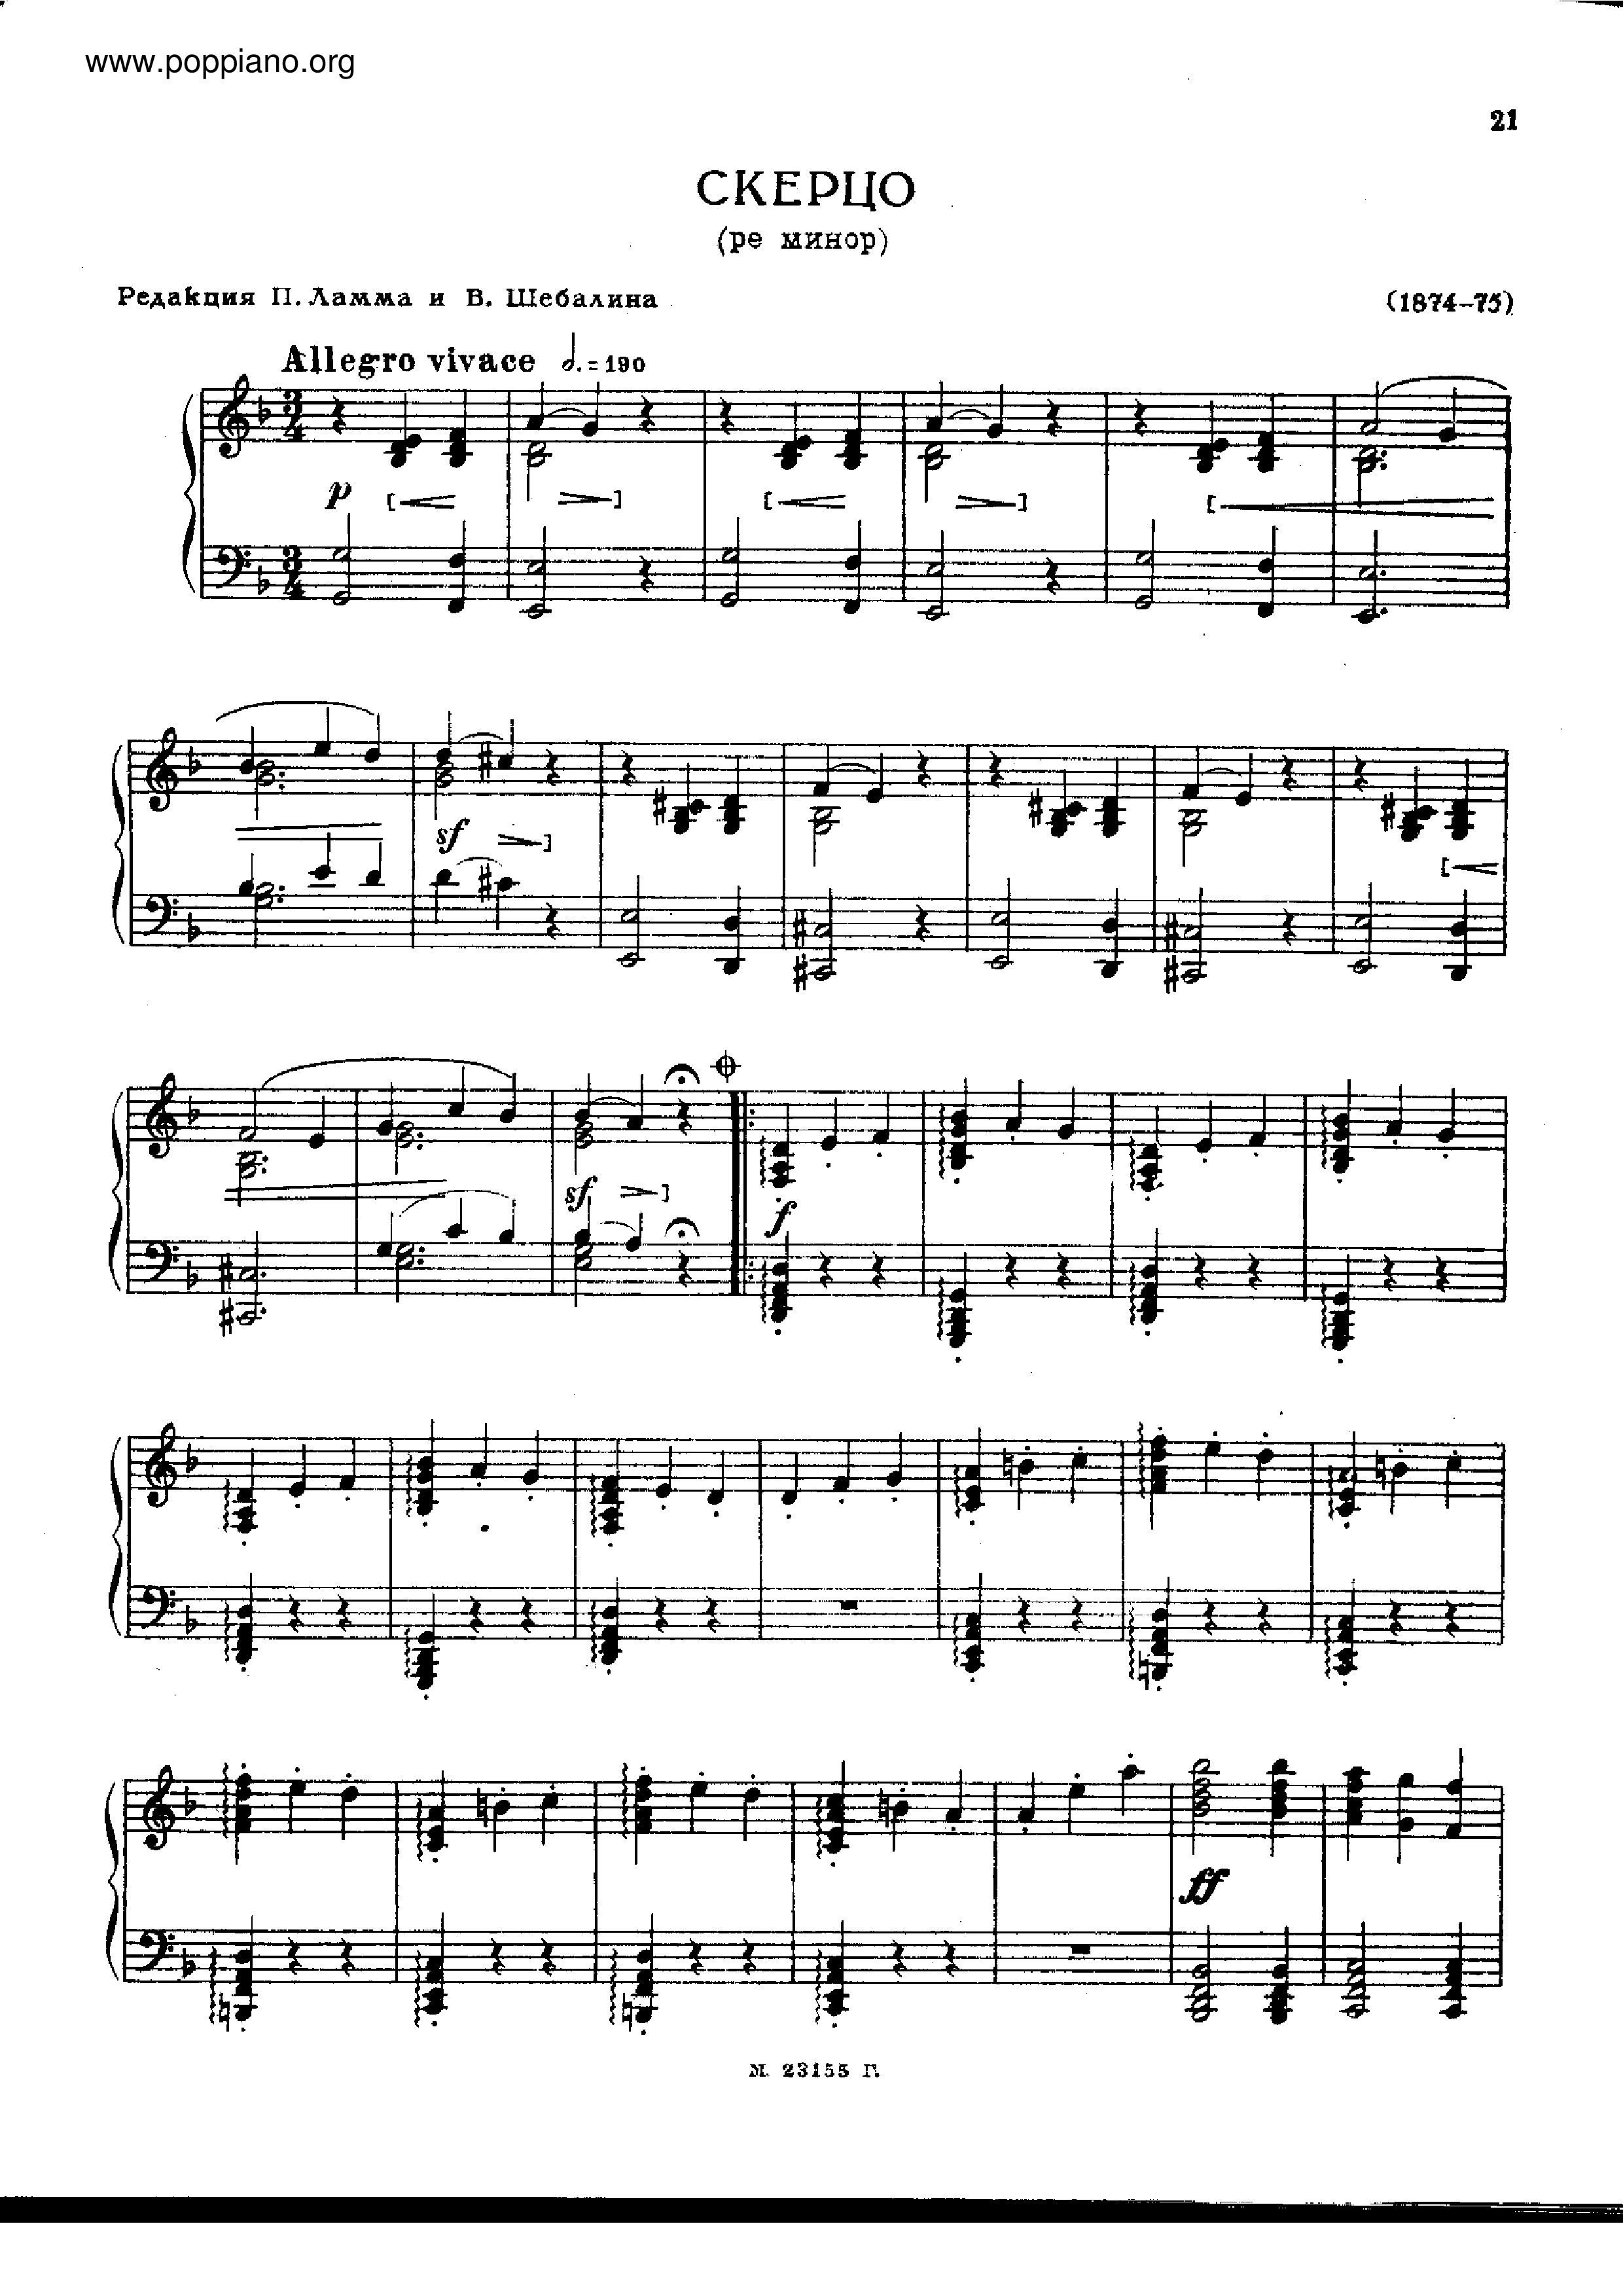 No.4 in D minor琴譜